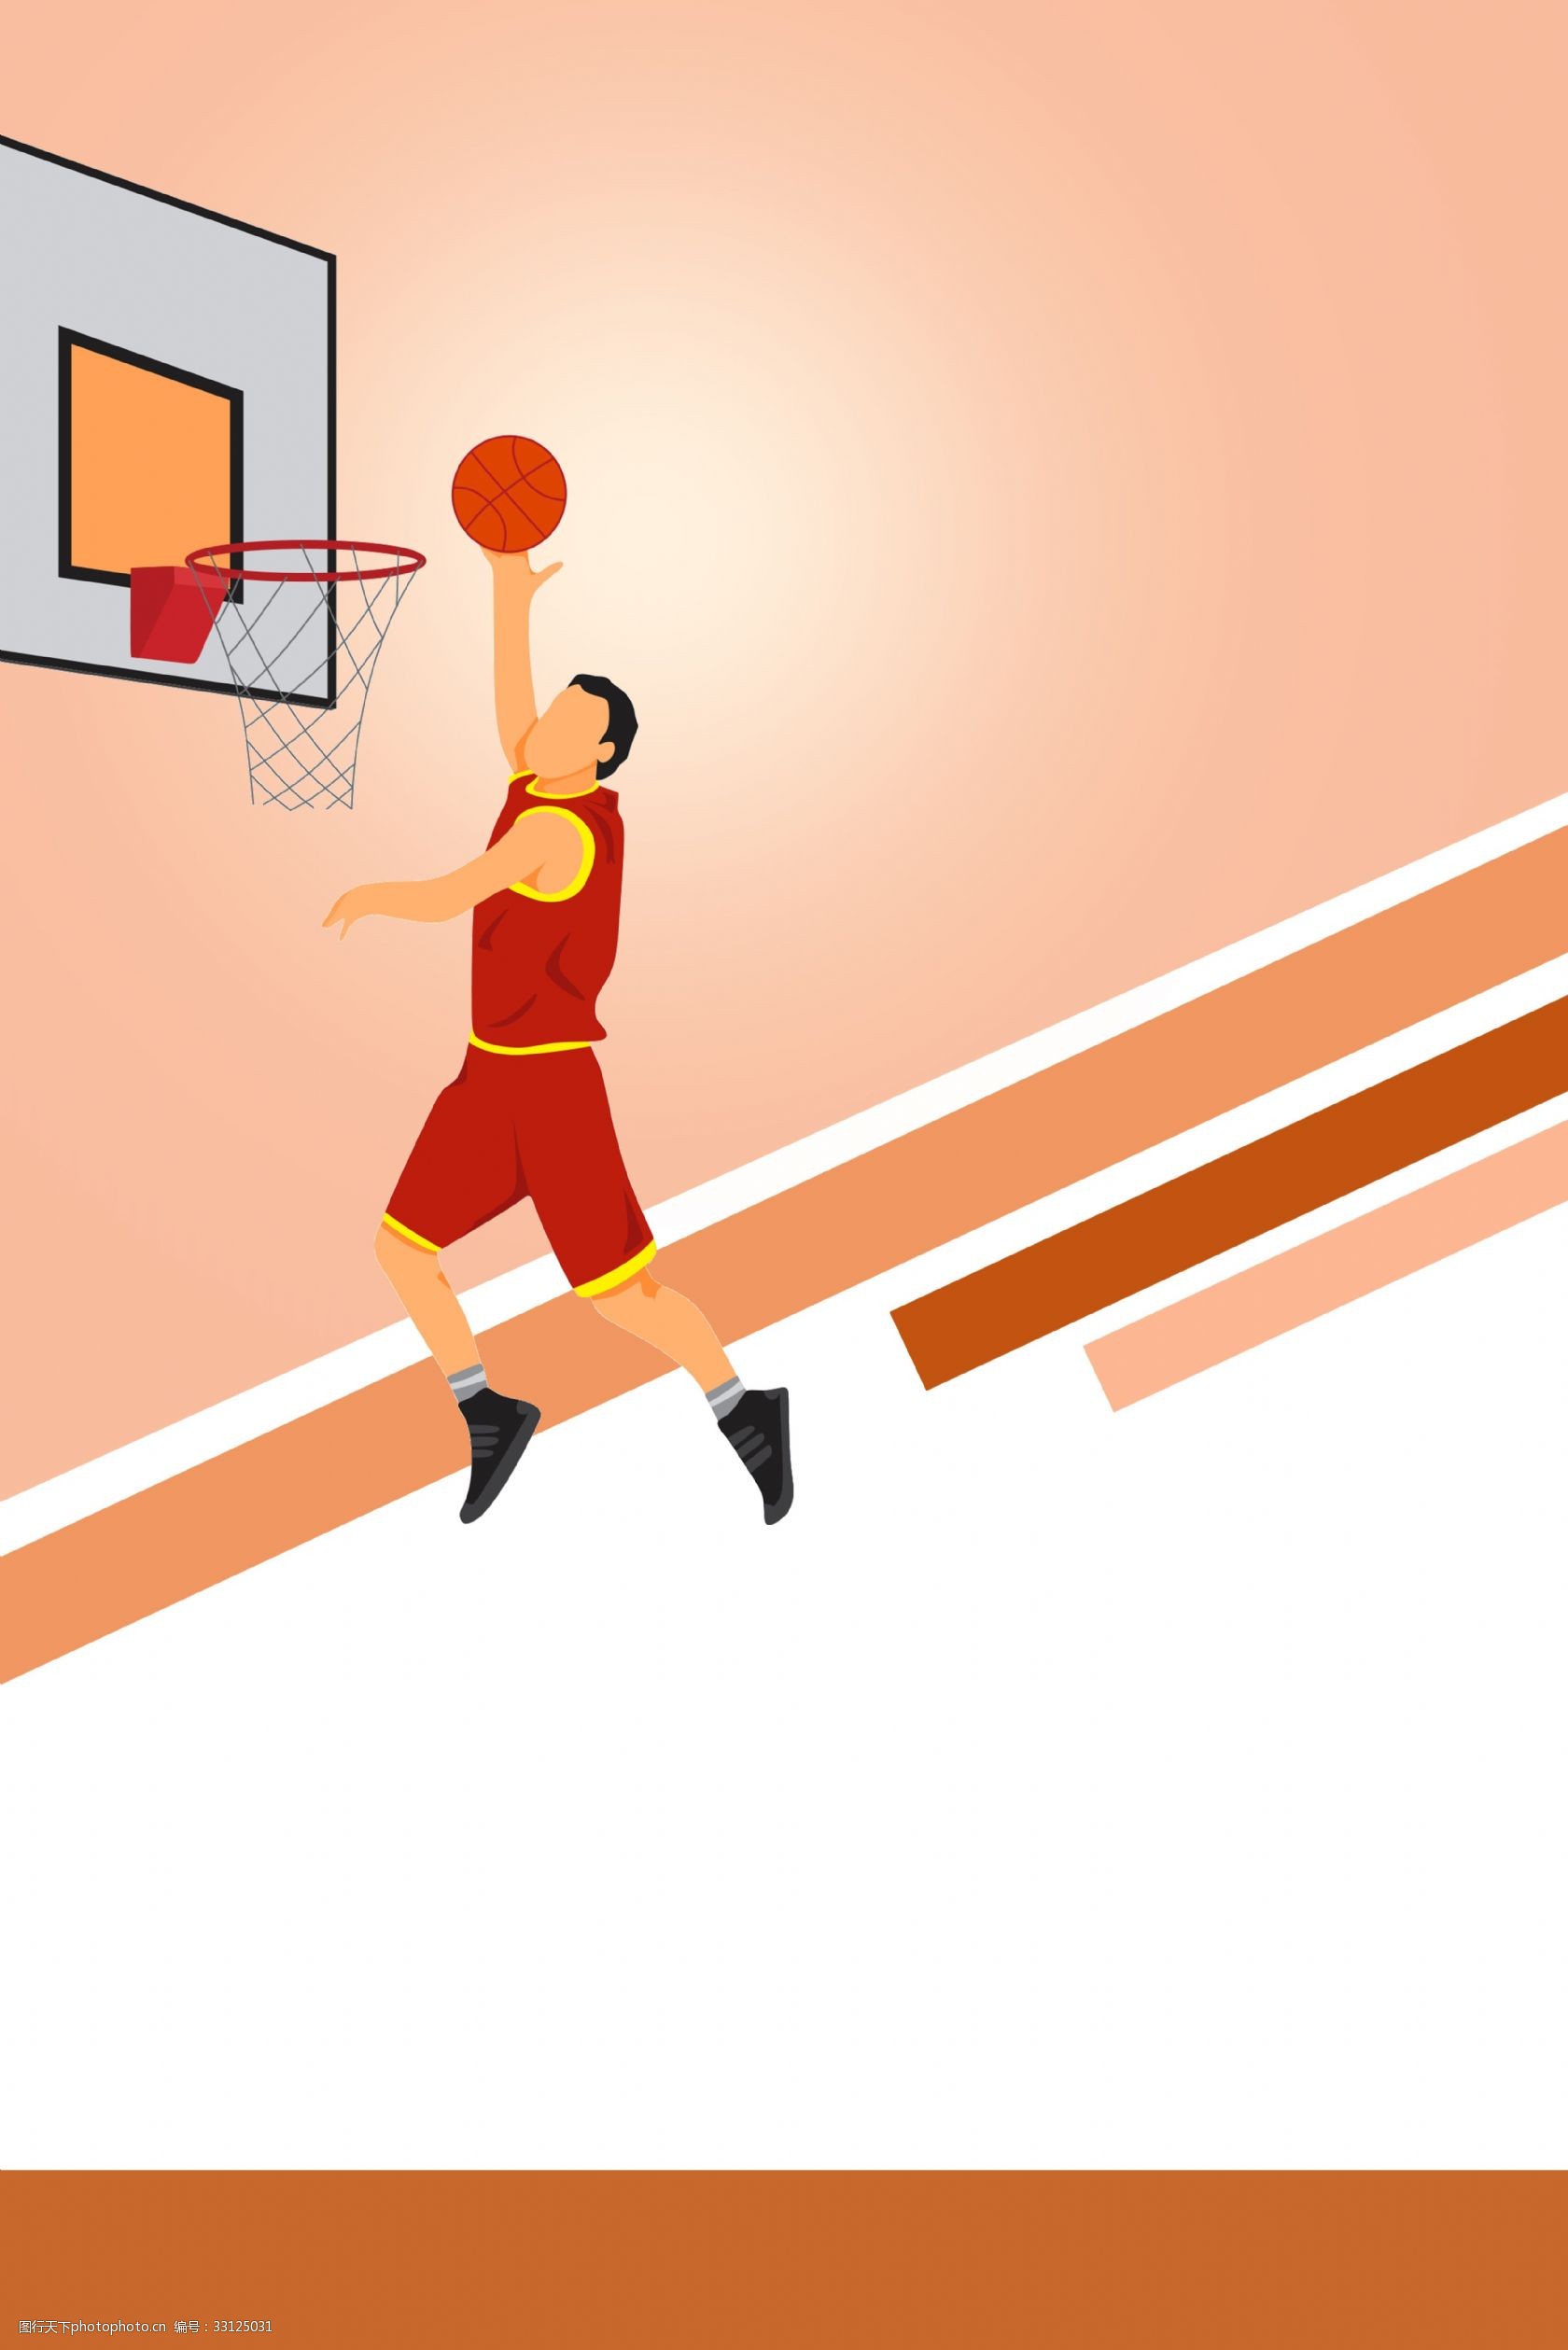 关键词:卡通正在灌篮的运动员海报背景 打篮球 篮球场 篮球赛 运动员